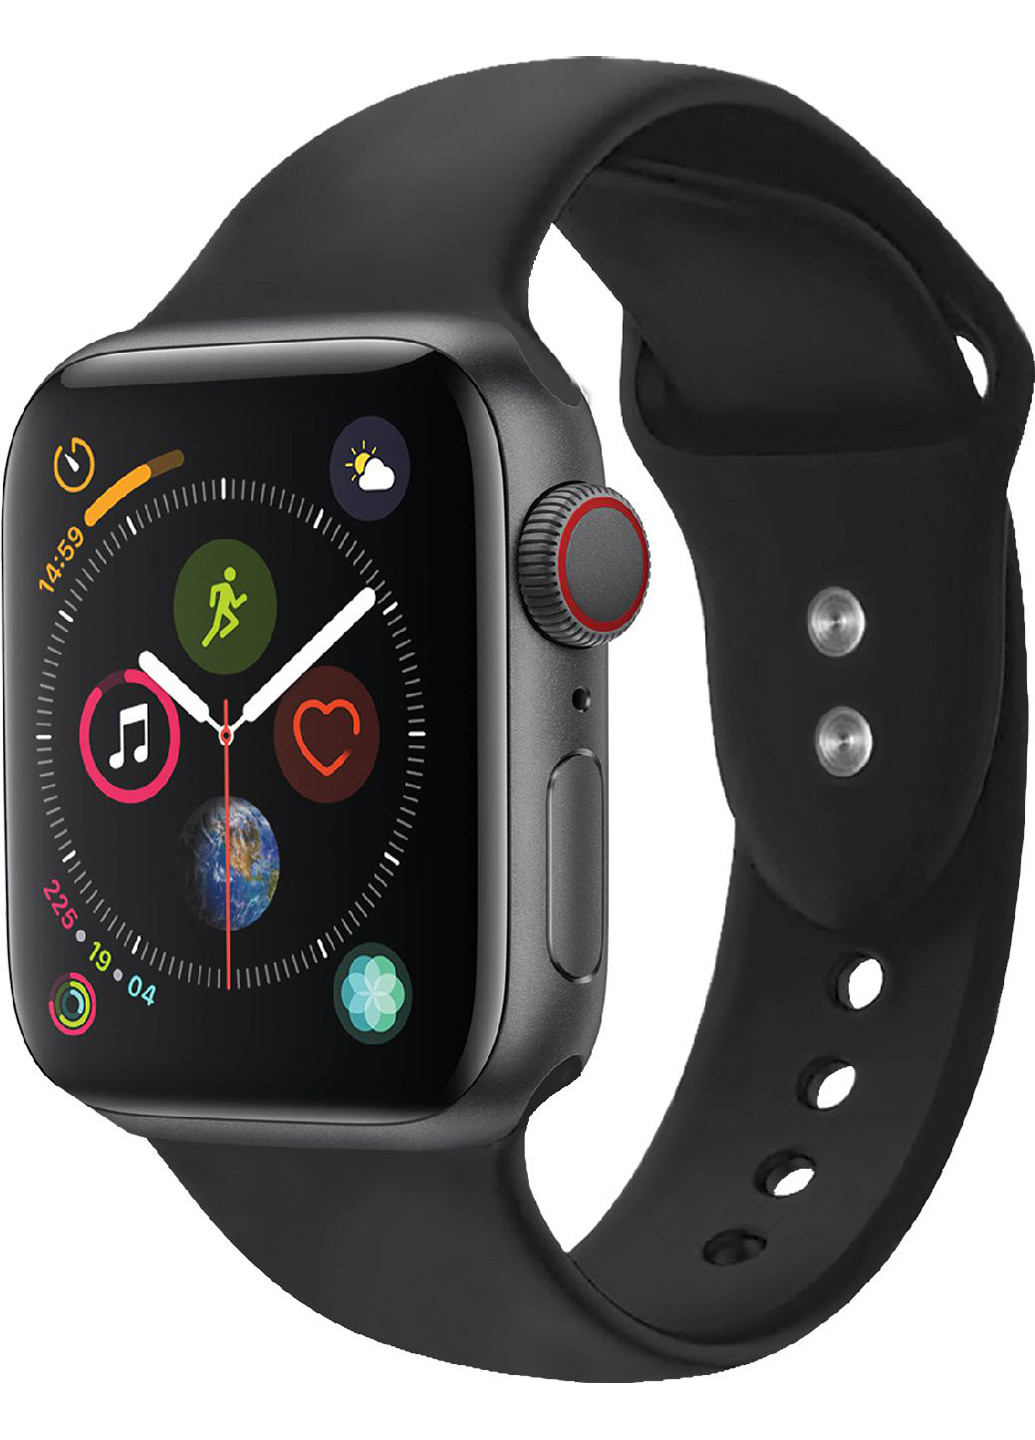 Силиконовый ремешок Oryx-42ML для Apple Watch 42-44 мм 1/2/3/4/5/6/SE Promate oryx-42ml.black (216034117)